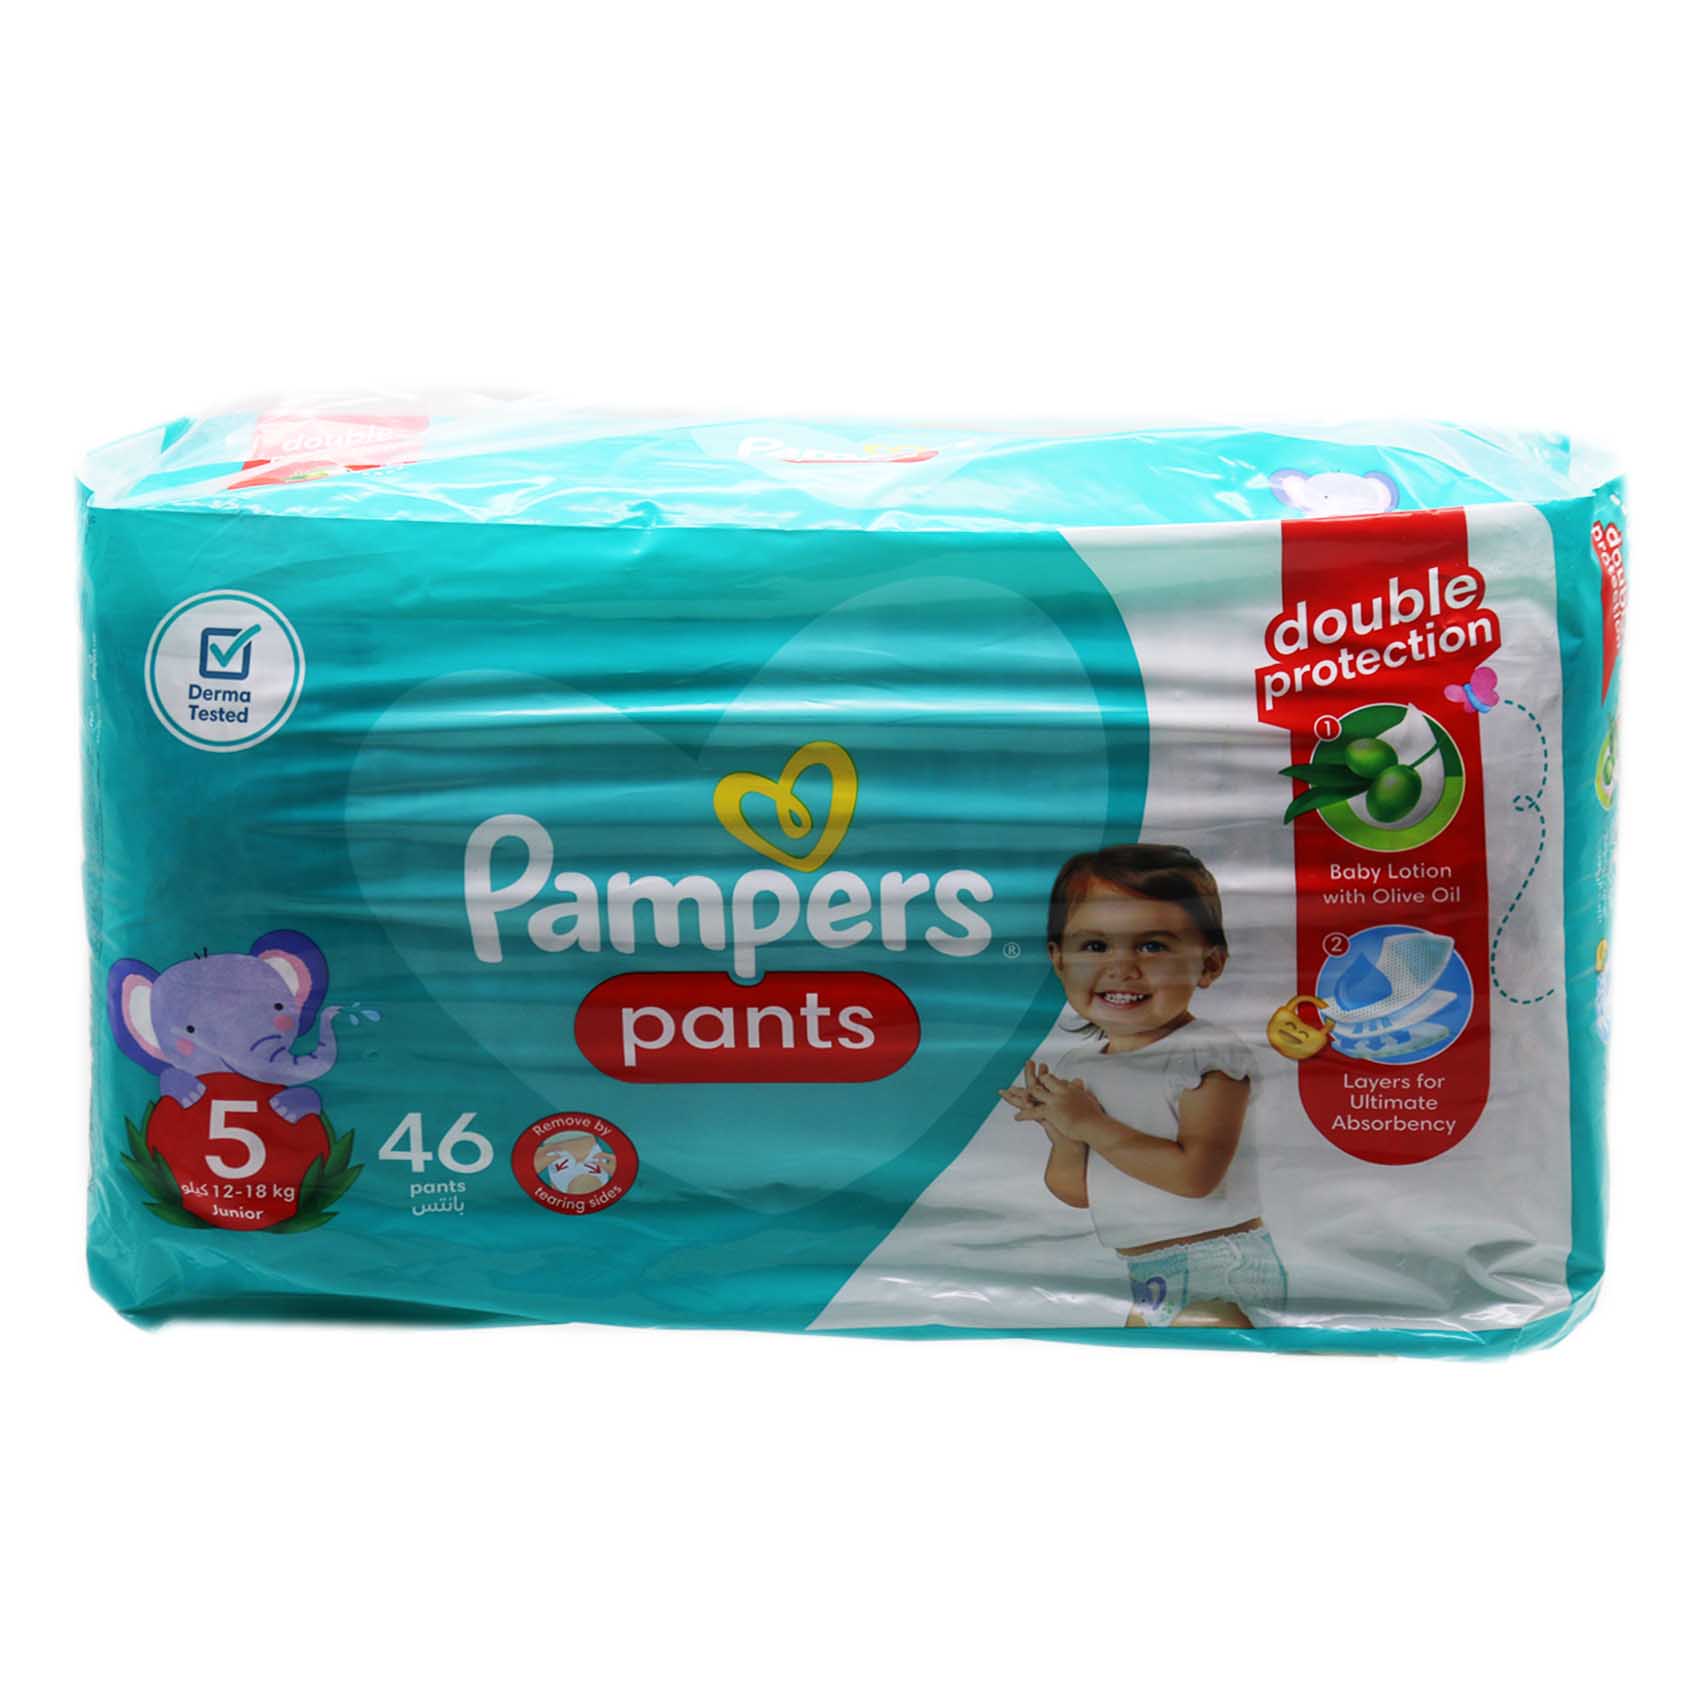 Pampers Pants Junior 46 Pcs